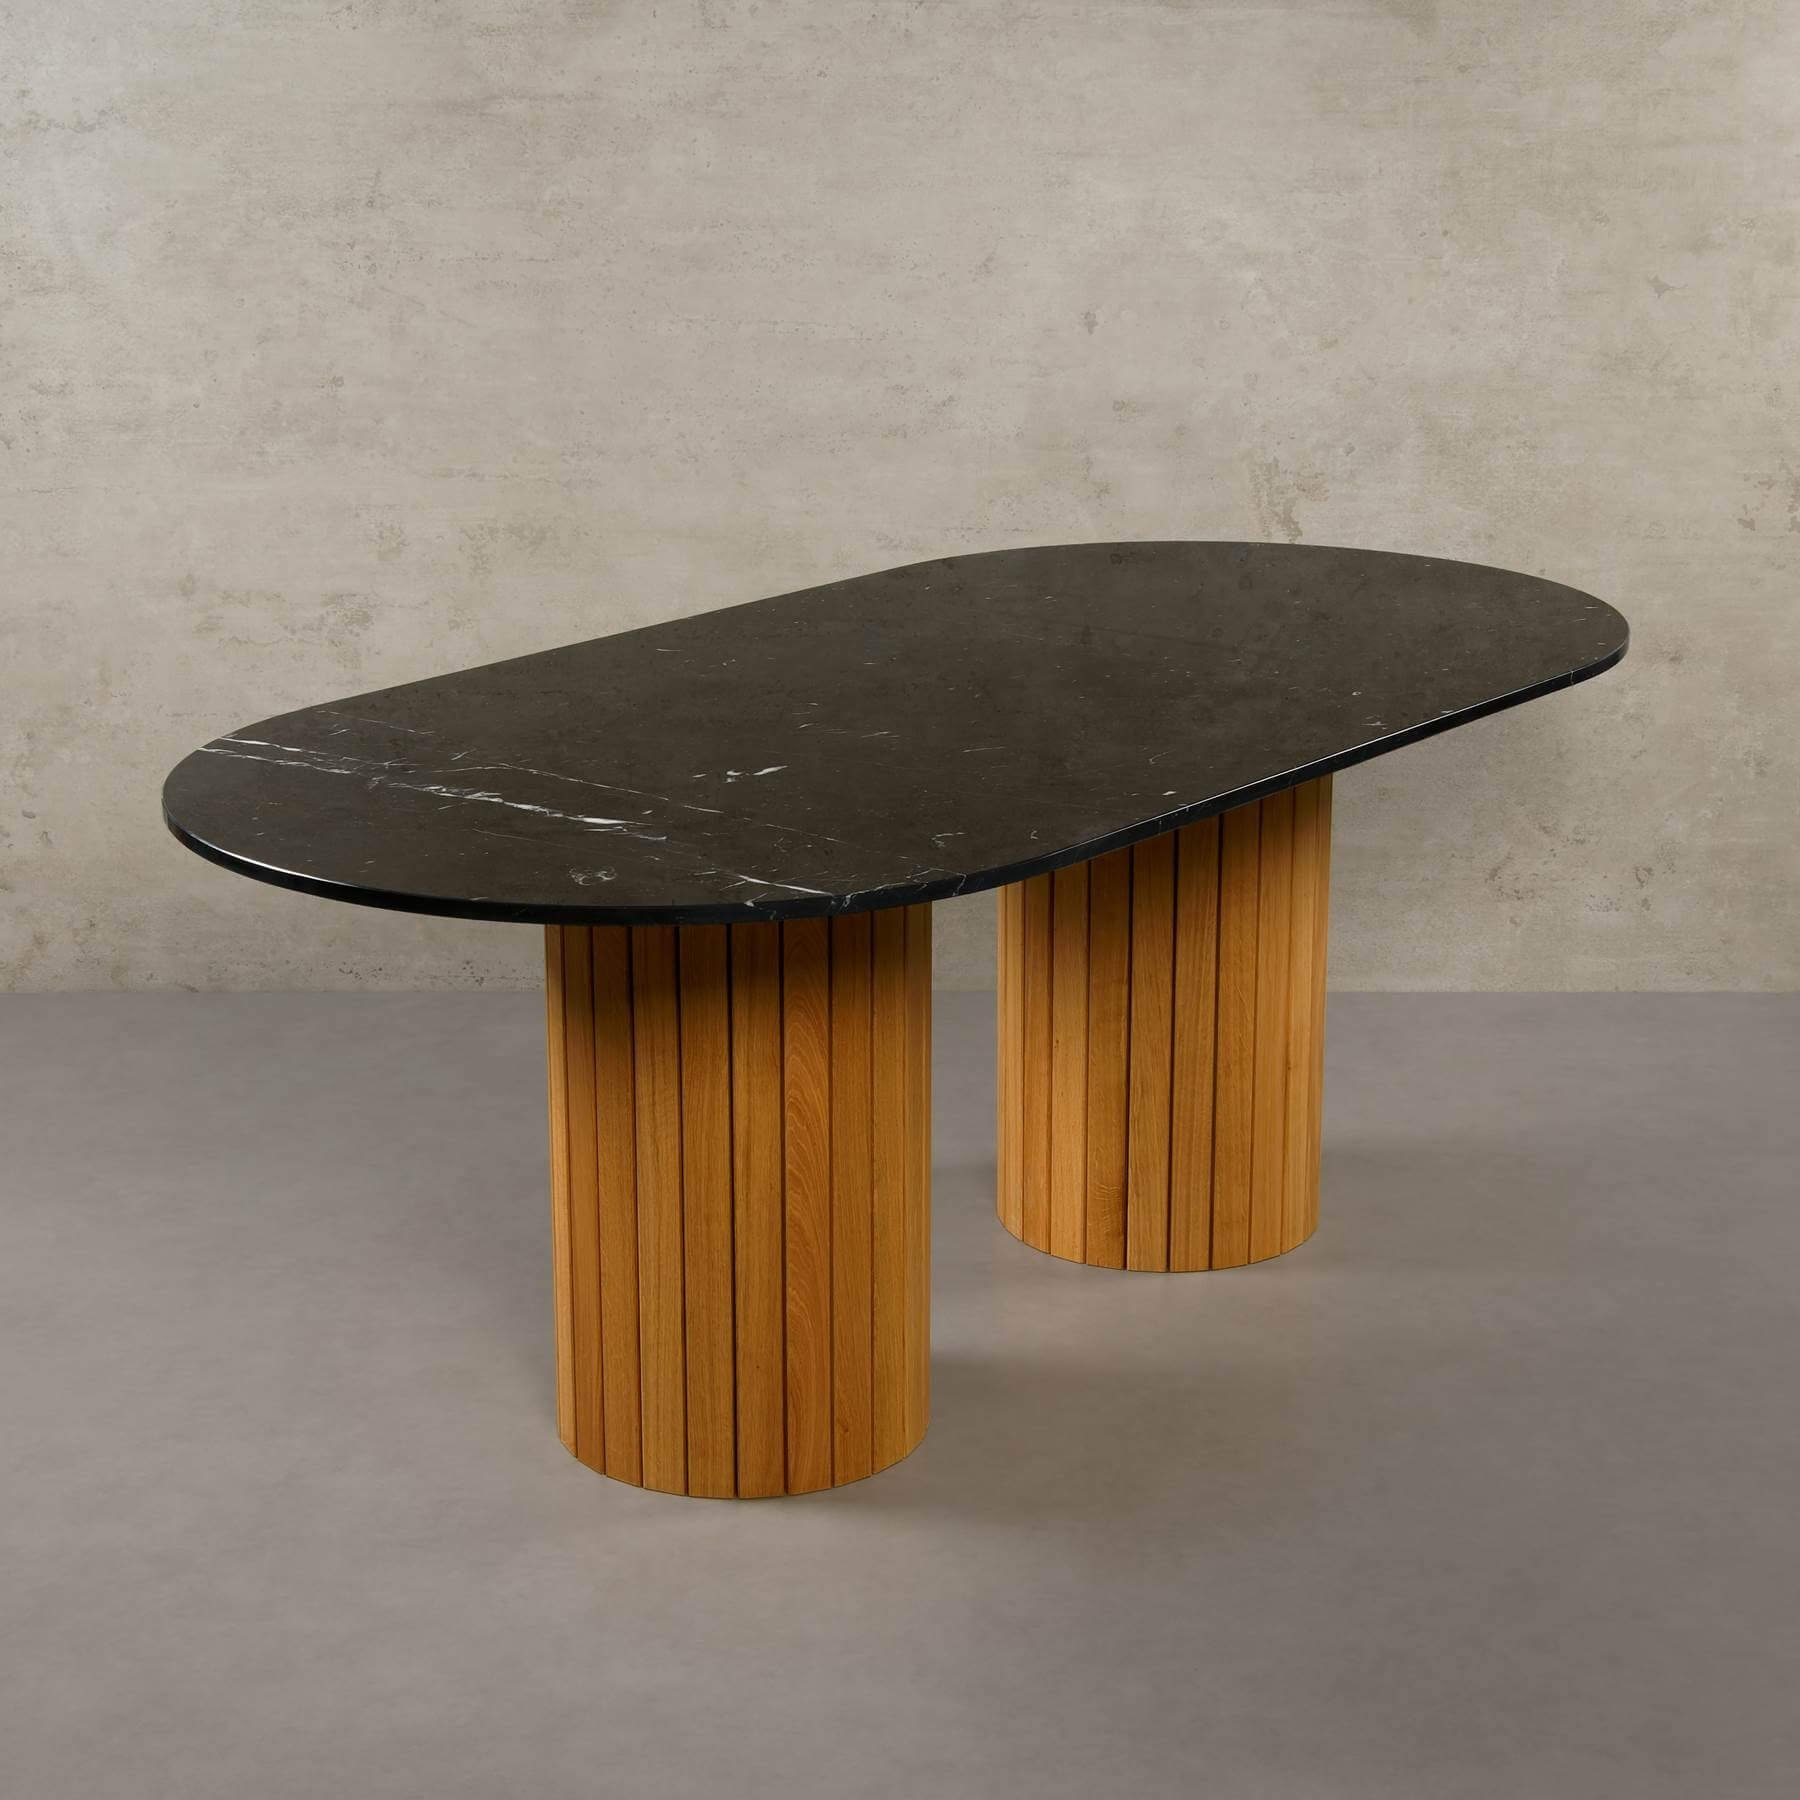 MAGNA Atelier Esstisch Montana mit ECHTEM MARMOR, Esstisch Tisch rund, Eichenholz Gestell, 200x100x76cm Nero Marquina